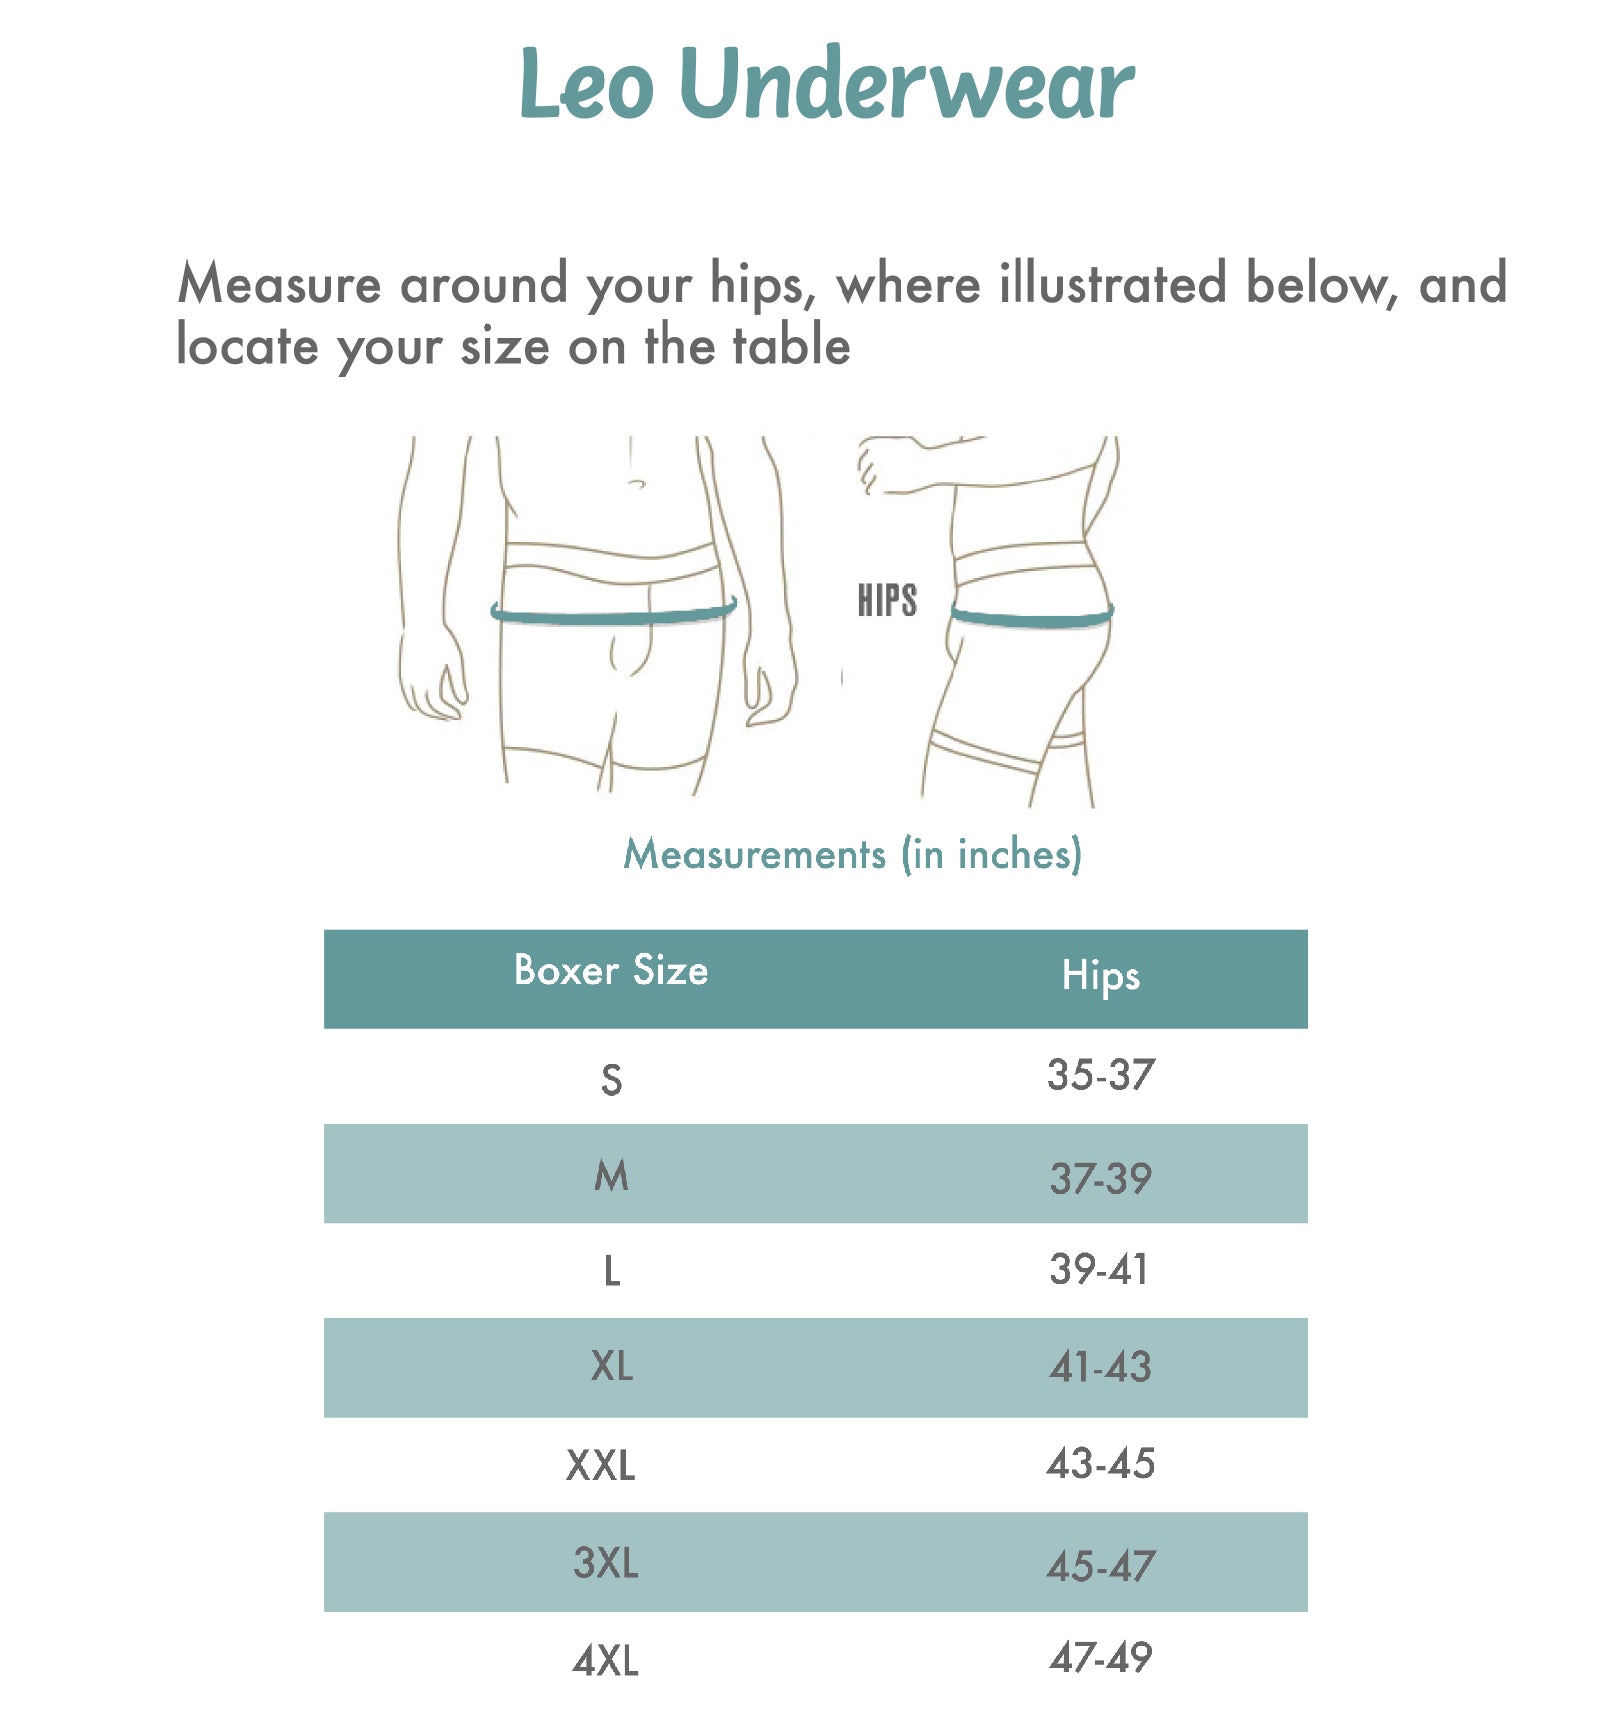 LEO Men's Long Leg Boxer Brief (033310),Medium,Red - Red,Medium